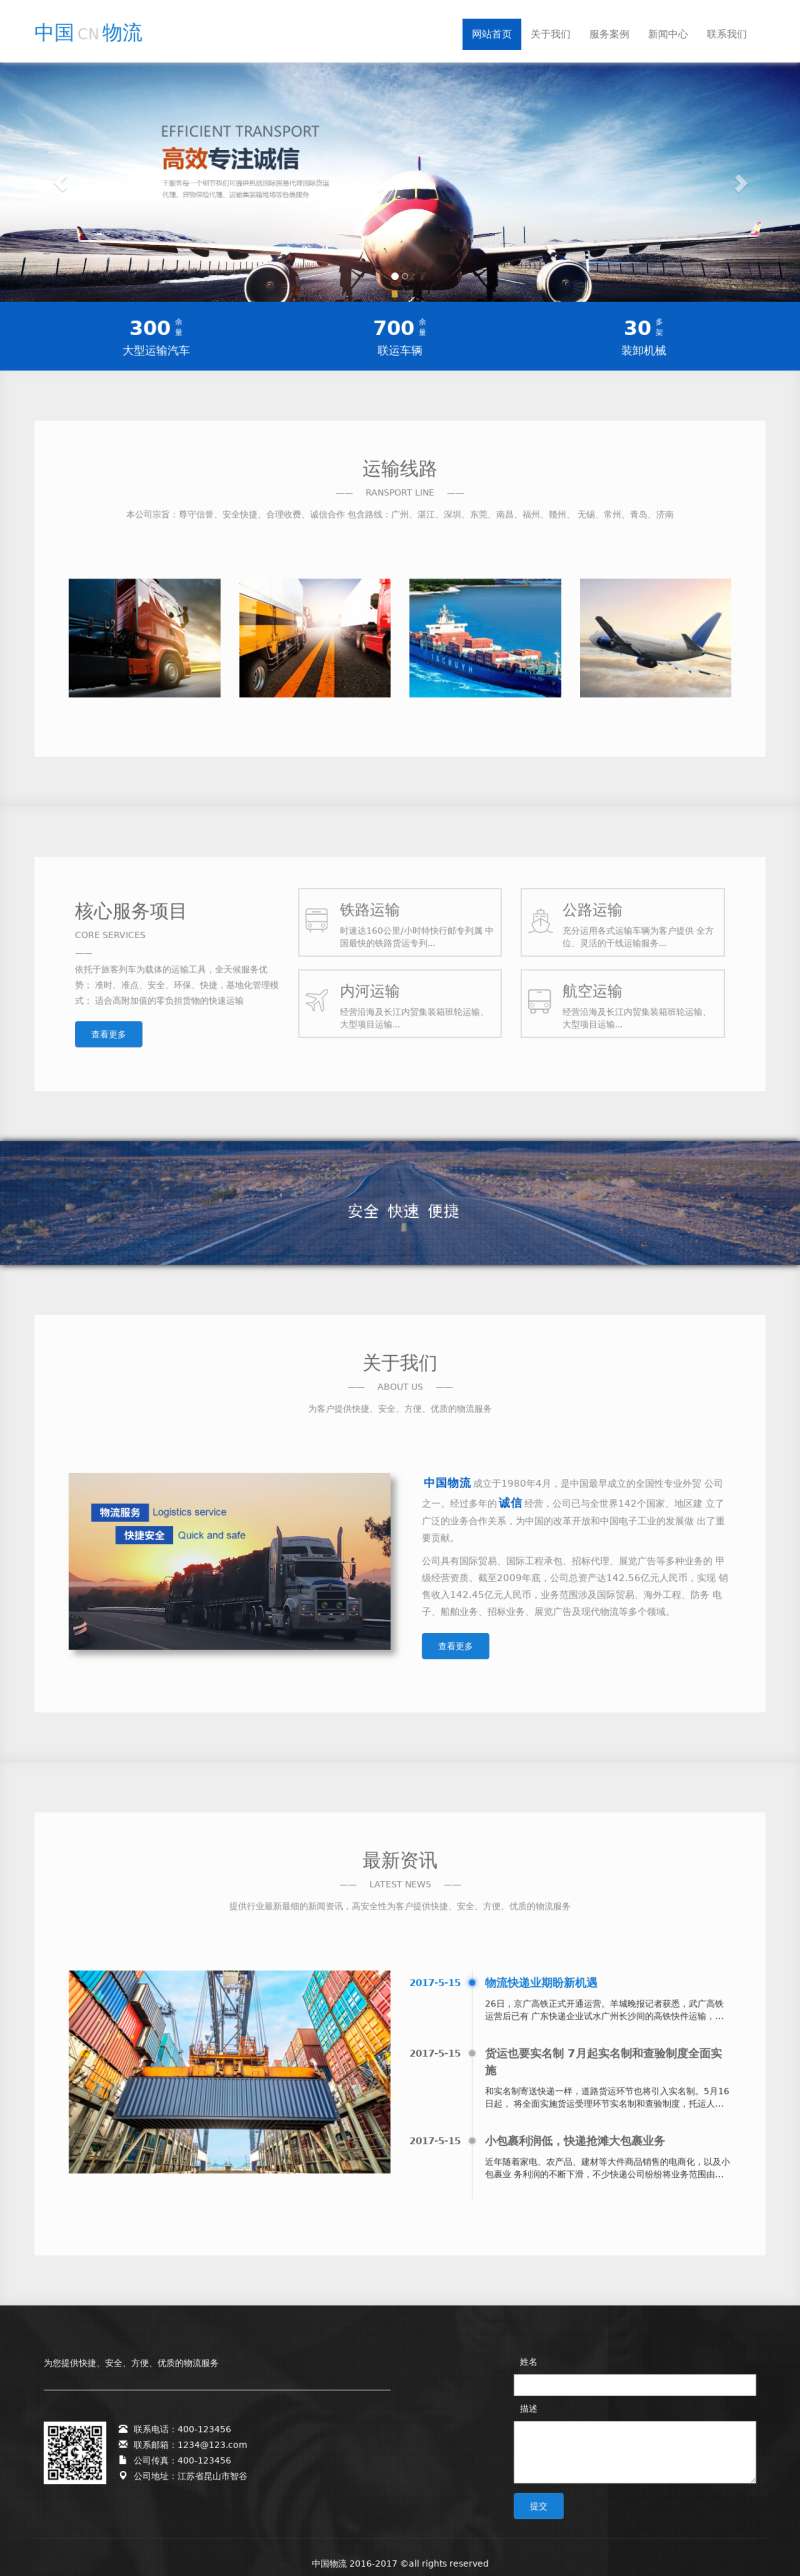 蓝色大气的中国物流运输公司模板